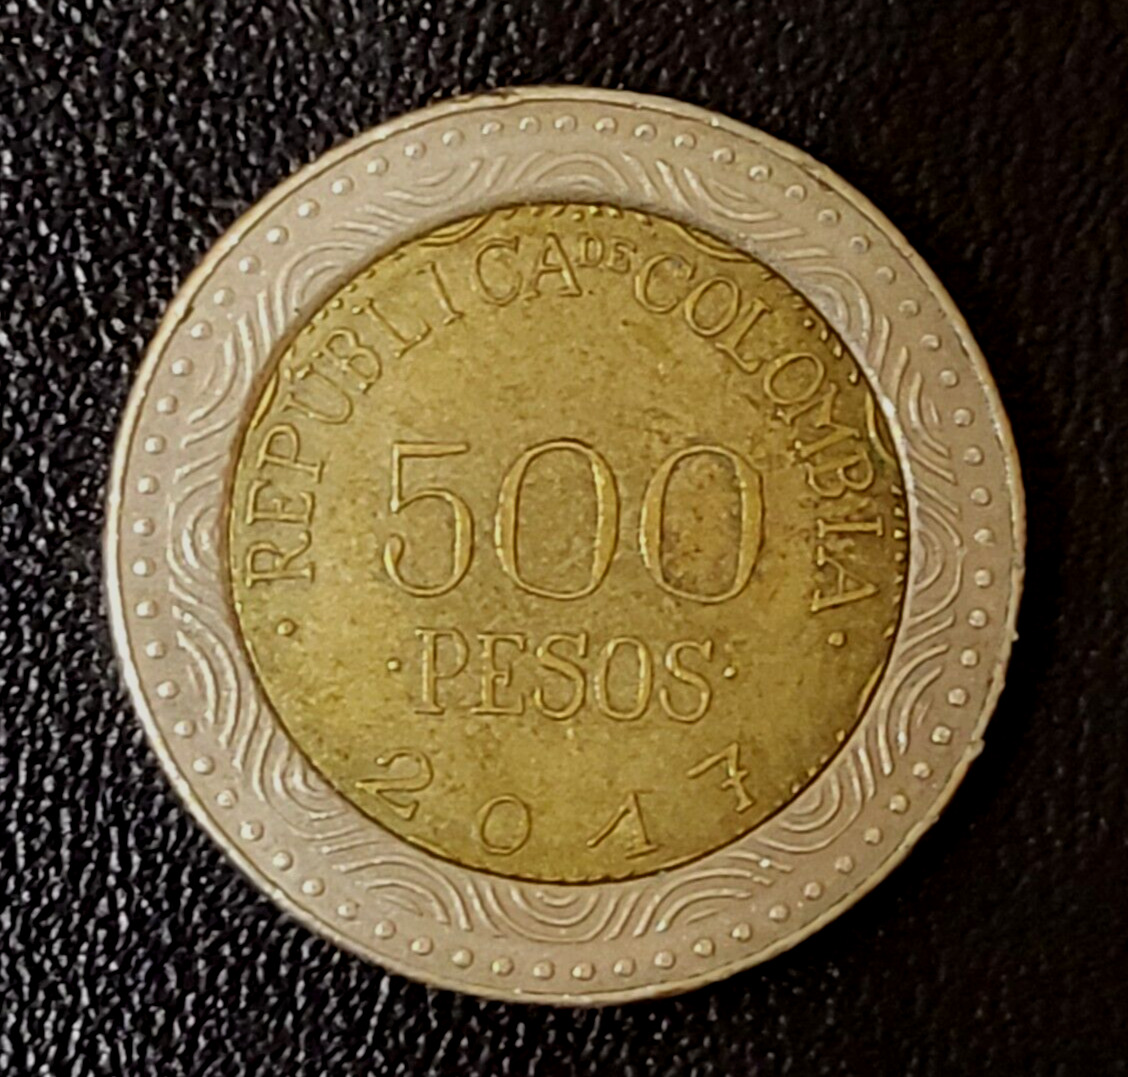 Colombia 500 pesos 2017 SOB